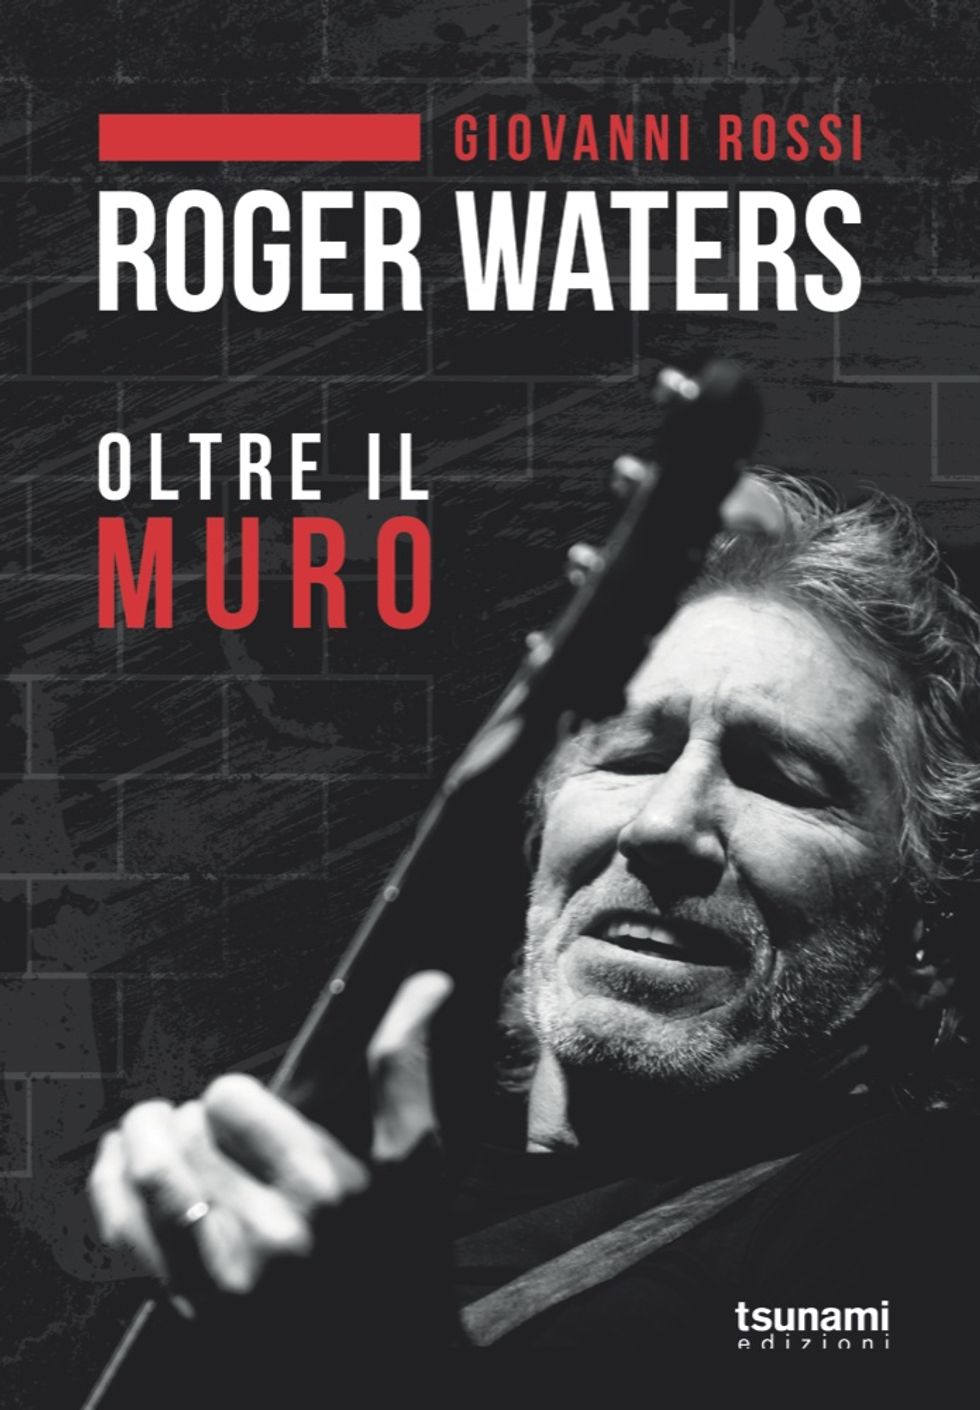 "Oltre il Muro", storia e storie di Roger Waters